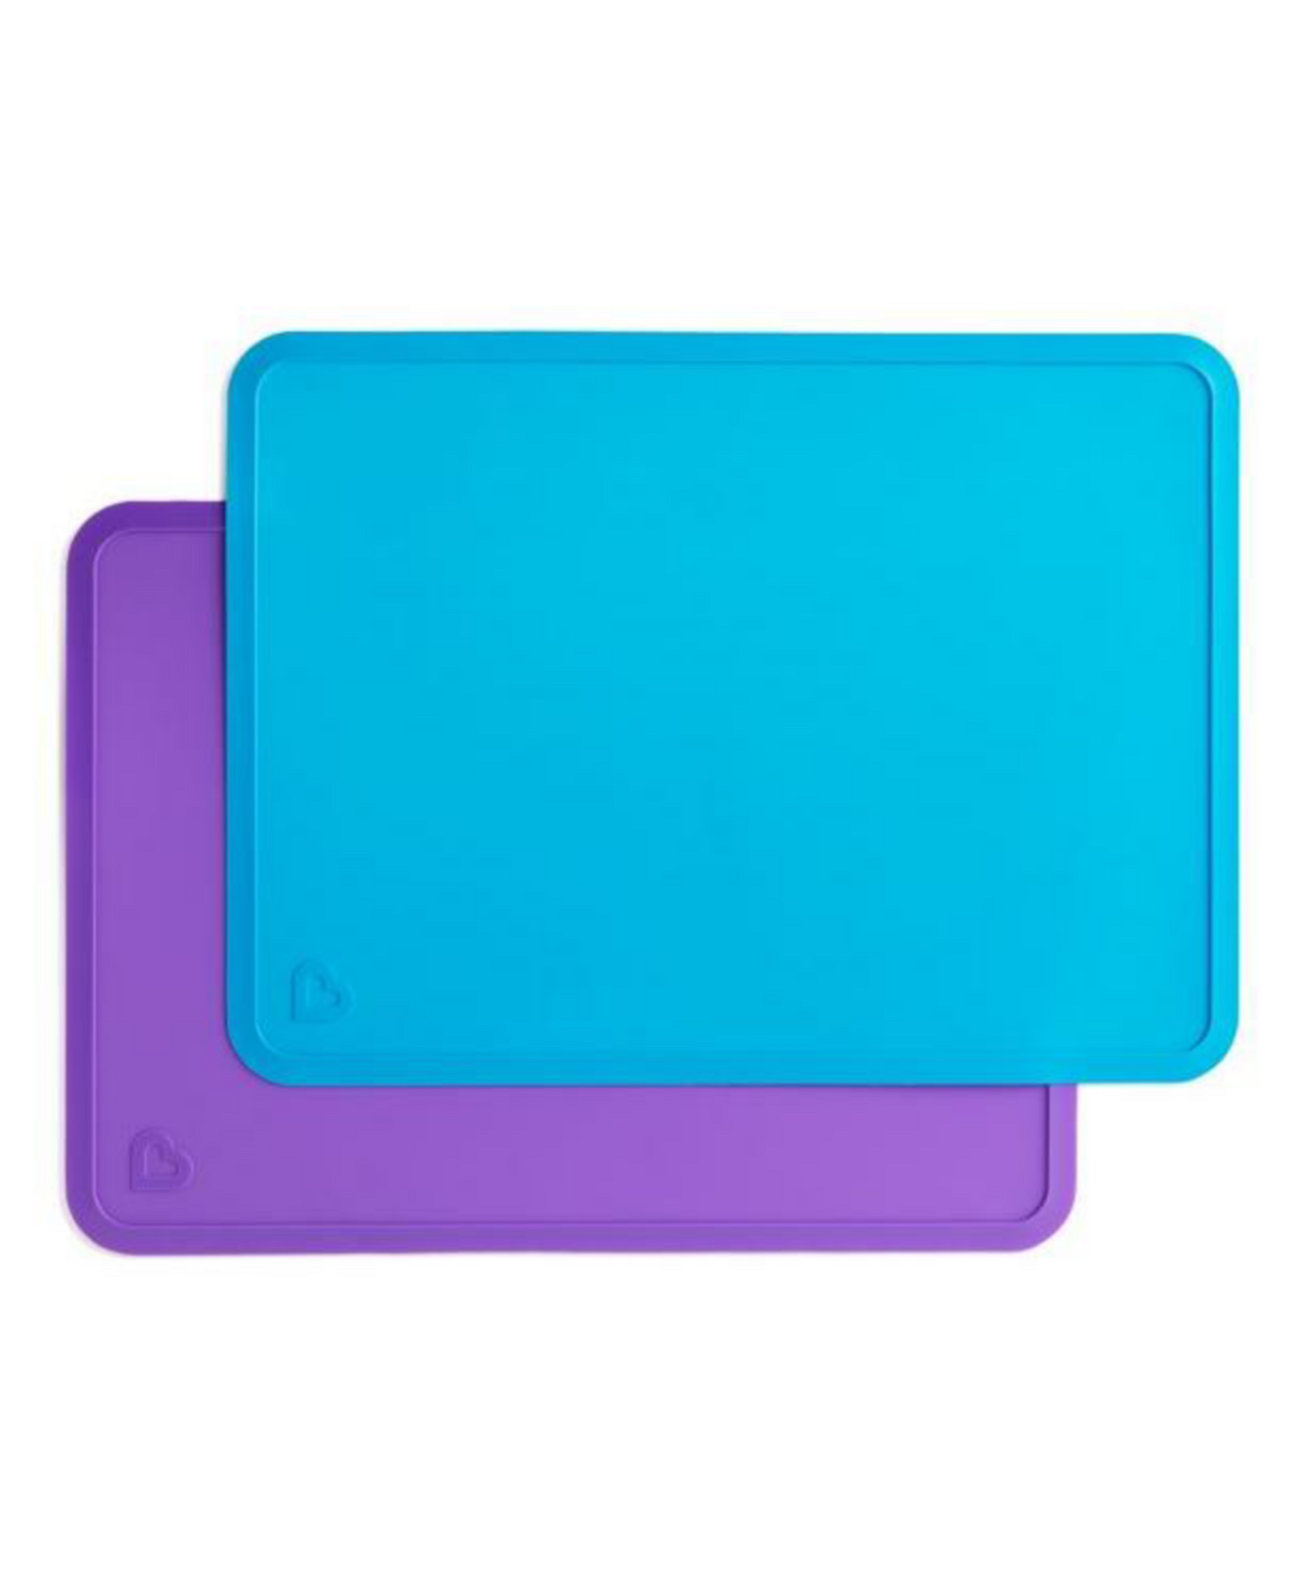 Безупречные силиконовые салфетки, без бисфенола-А, синий/фиолетовый, 2 штуки Munchkin